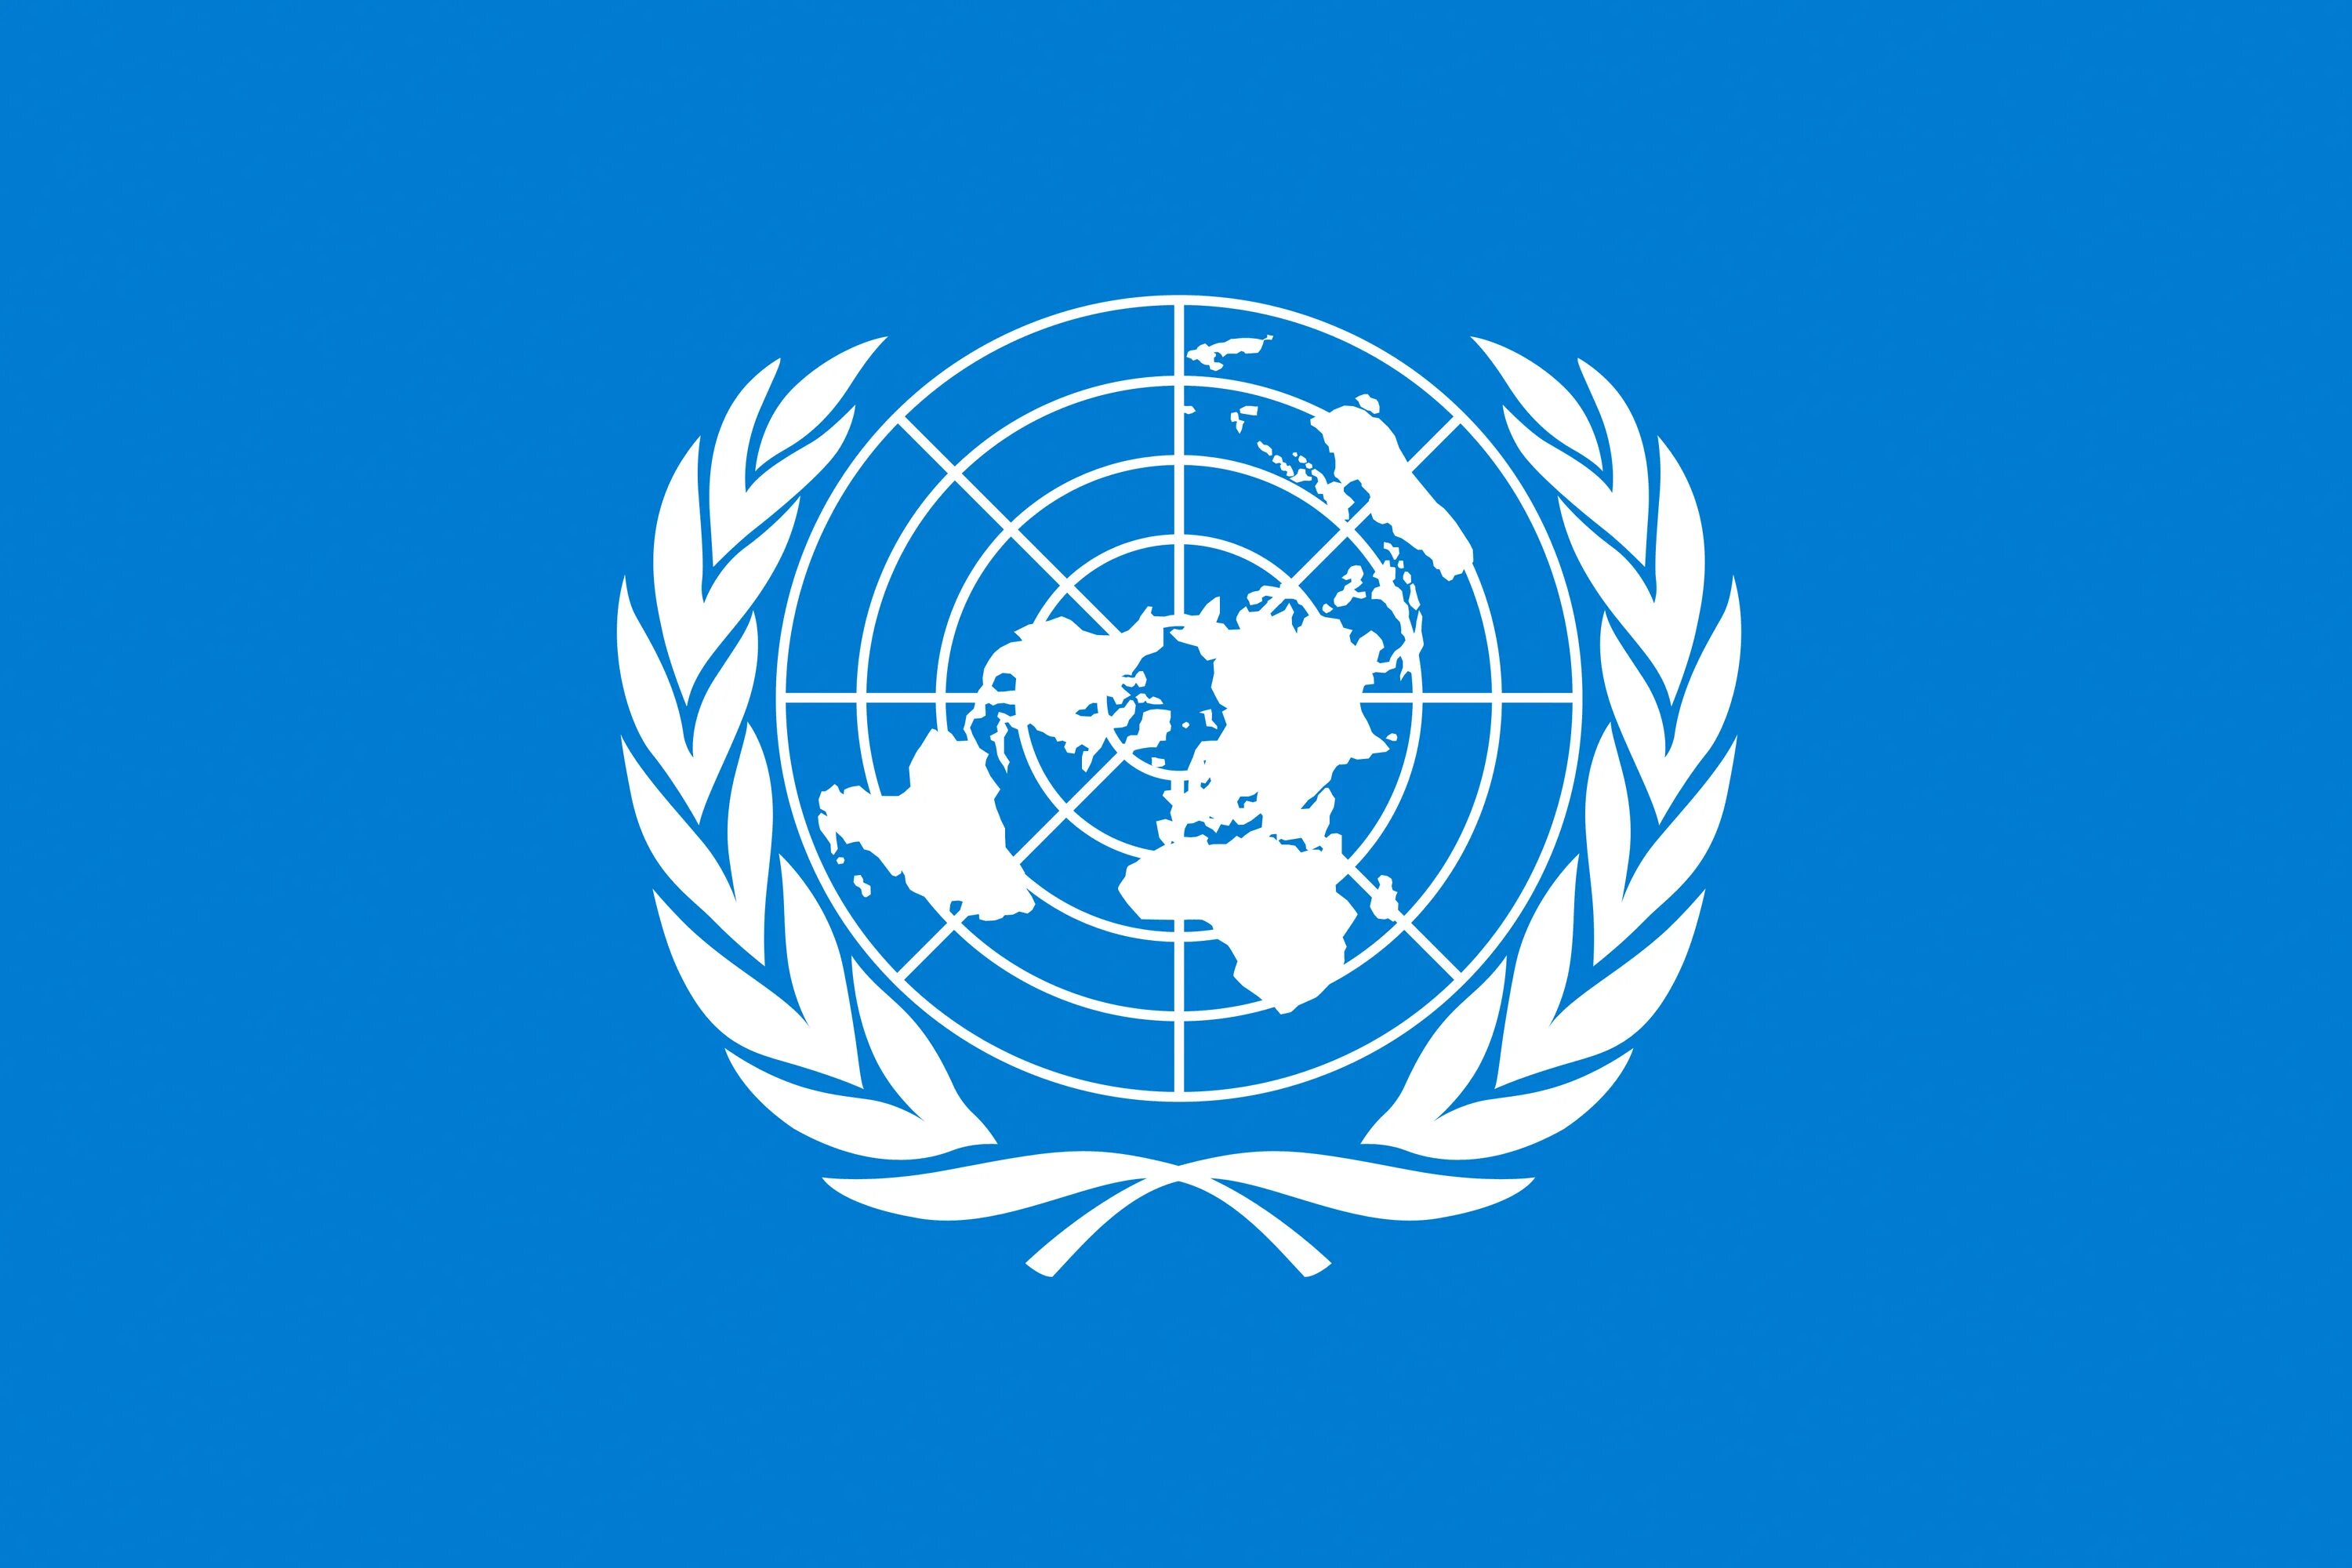 Связанные организации оон. Флаг всемирной организации здравоохранения. Всемирная метеорологическая организация (WMO);. Флаг организации Объединенных наций. Организация Объединенных наций (ООН).